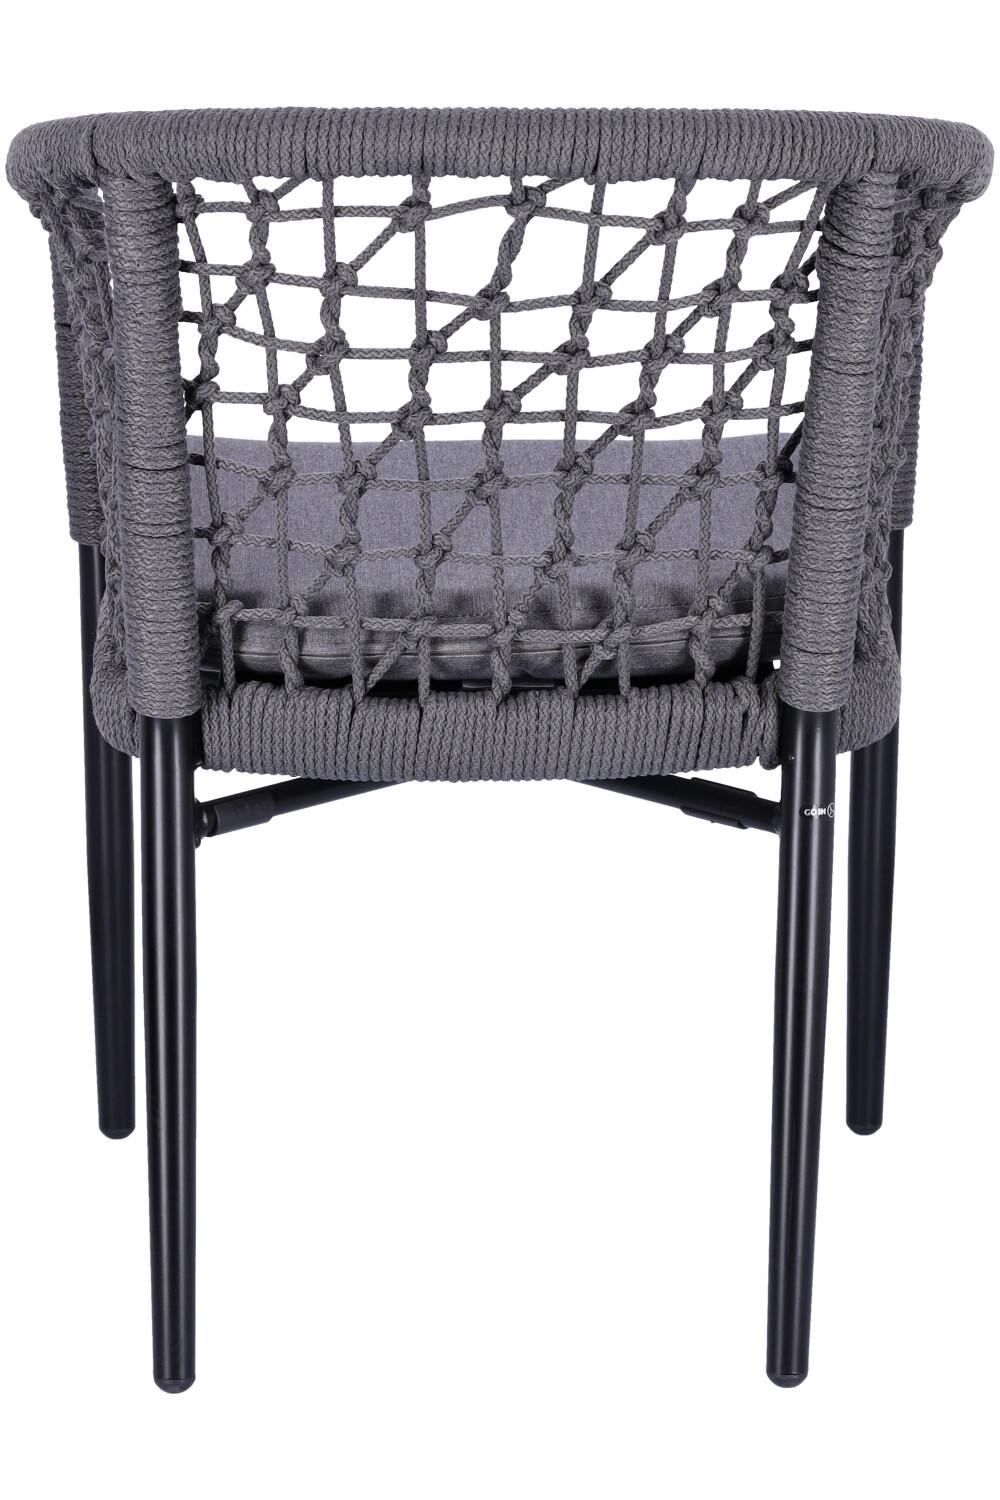 Abbildung arm chair Penka Rückansicht